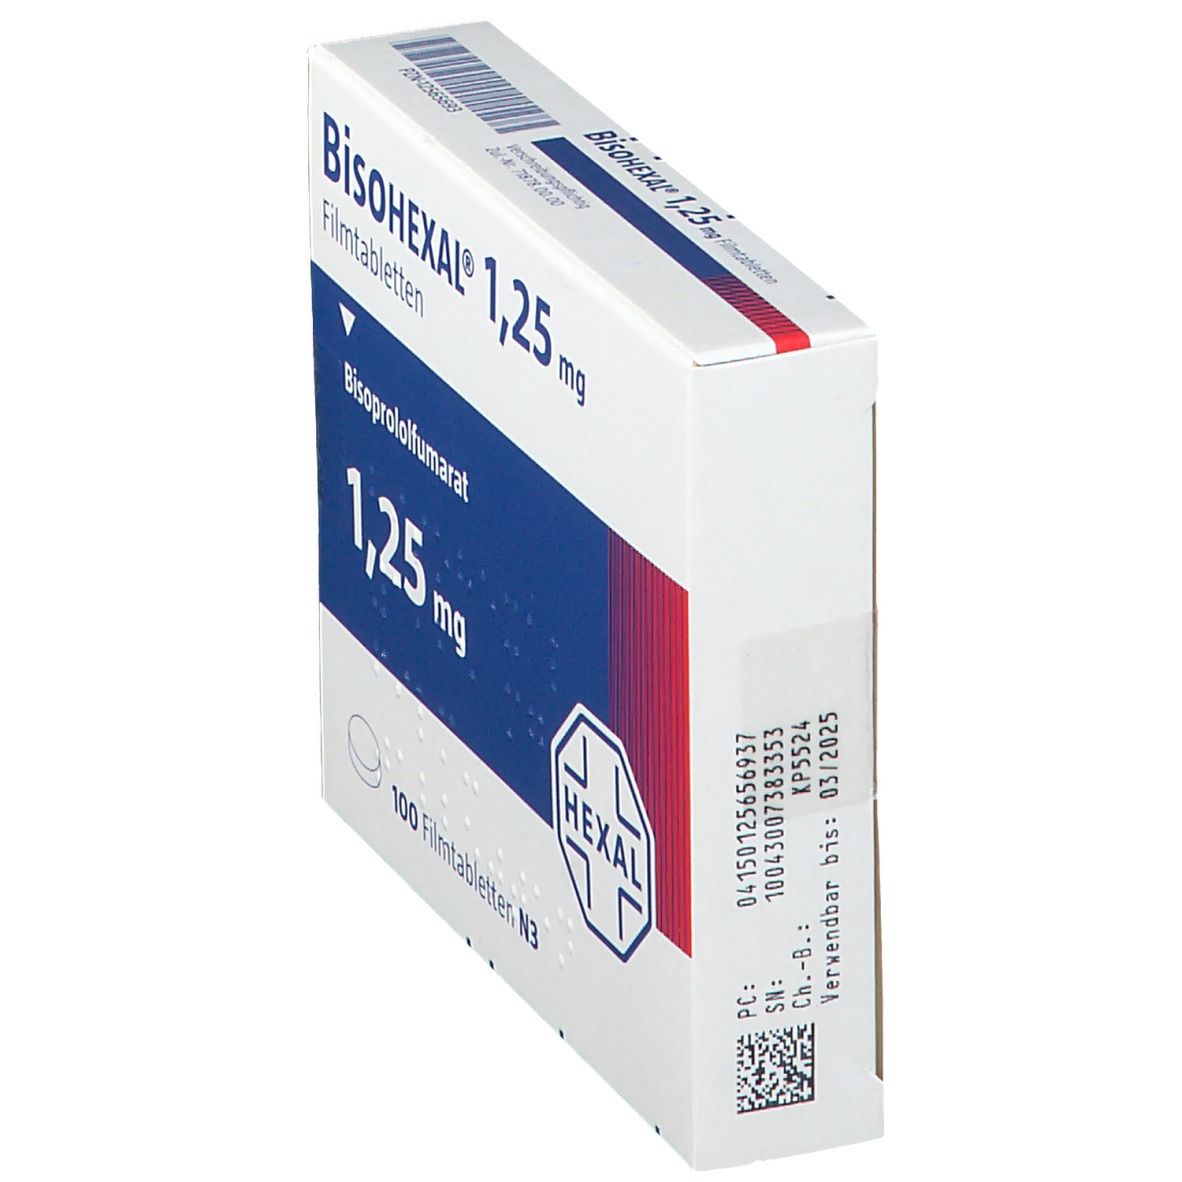 BisoHEXAL® 1,25 mg